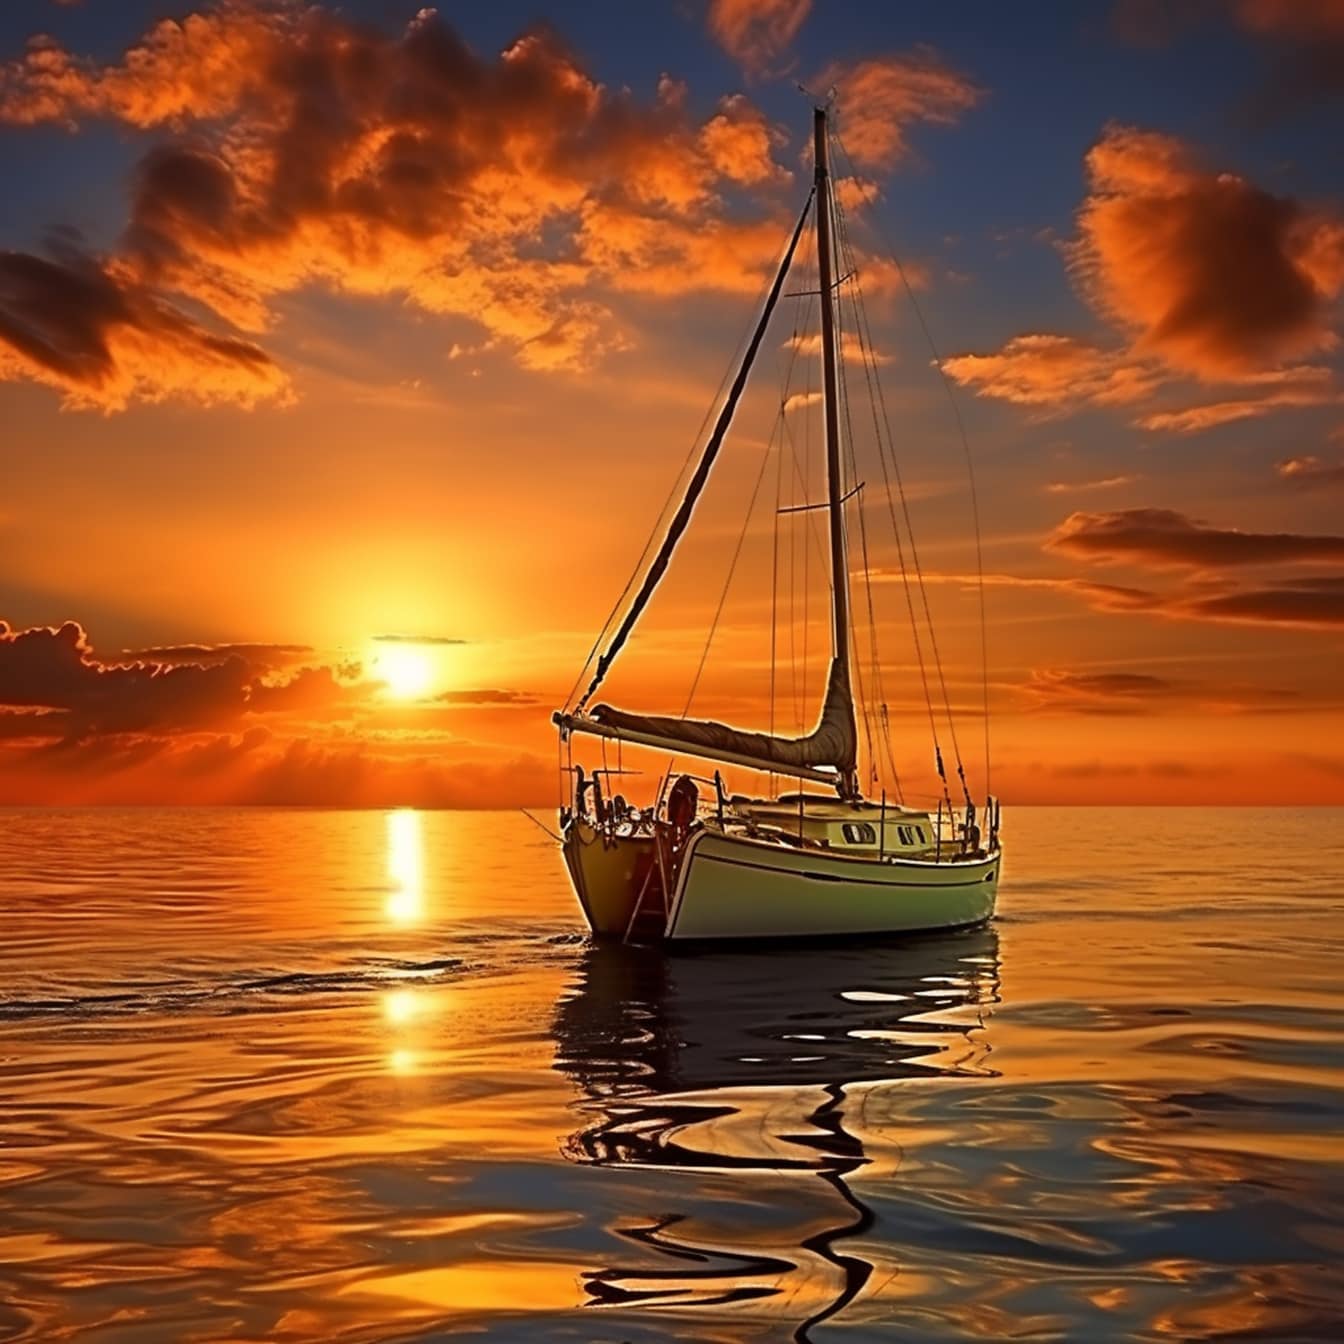 Иллюстрация парусной лодки в океане на закате